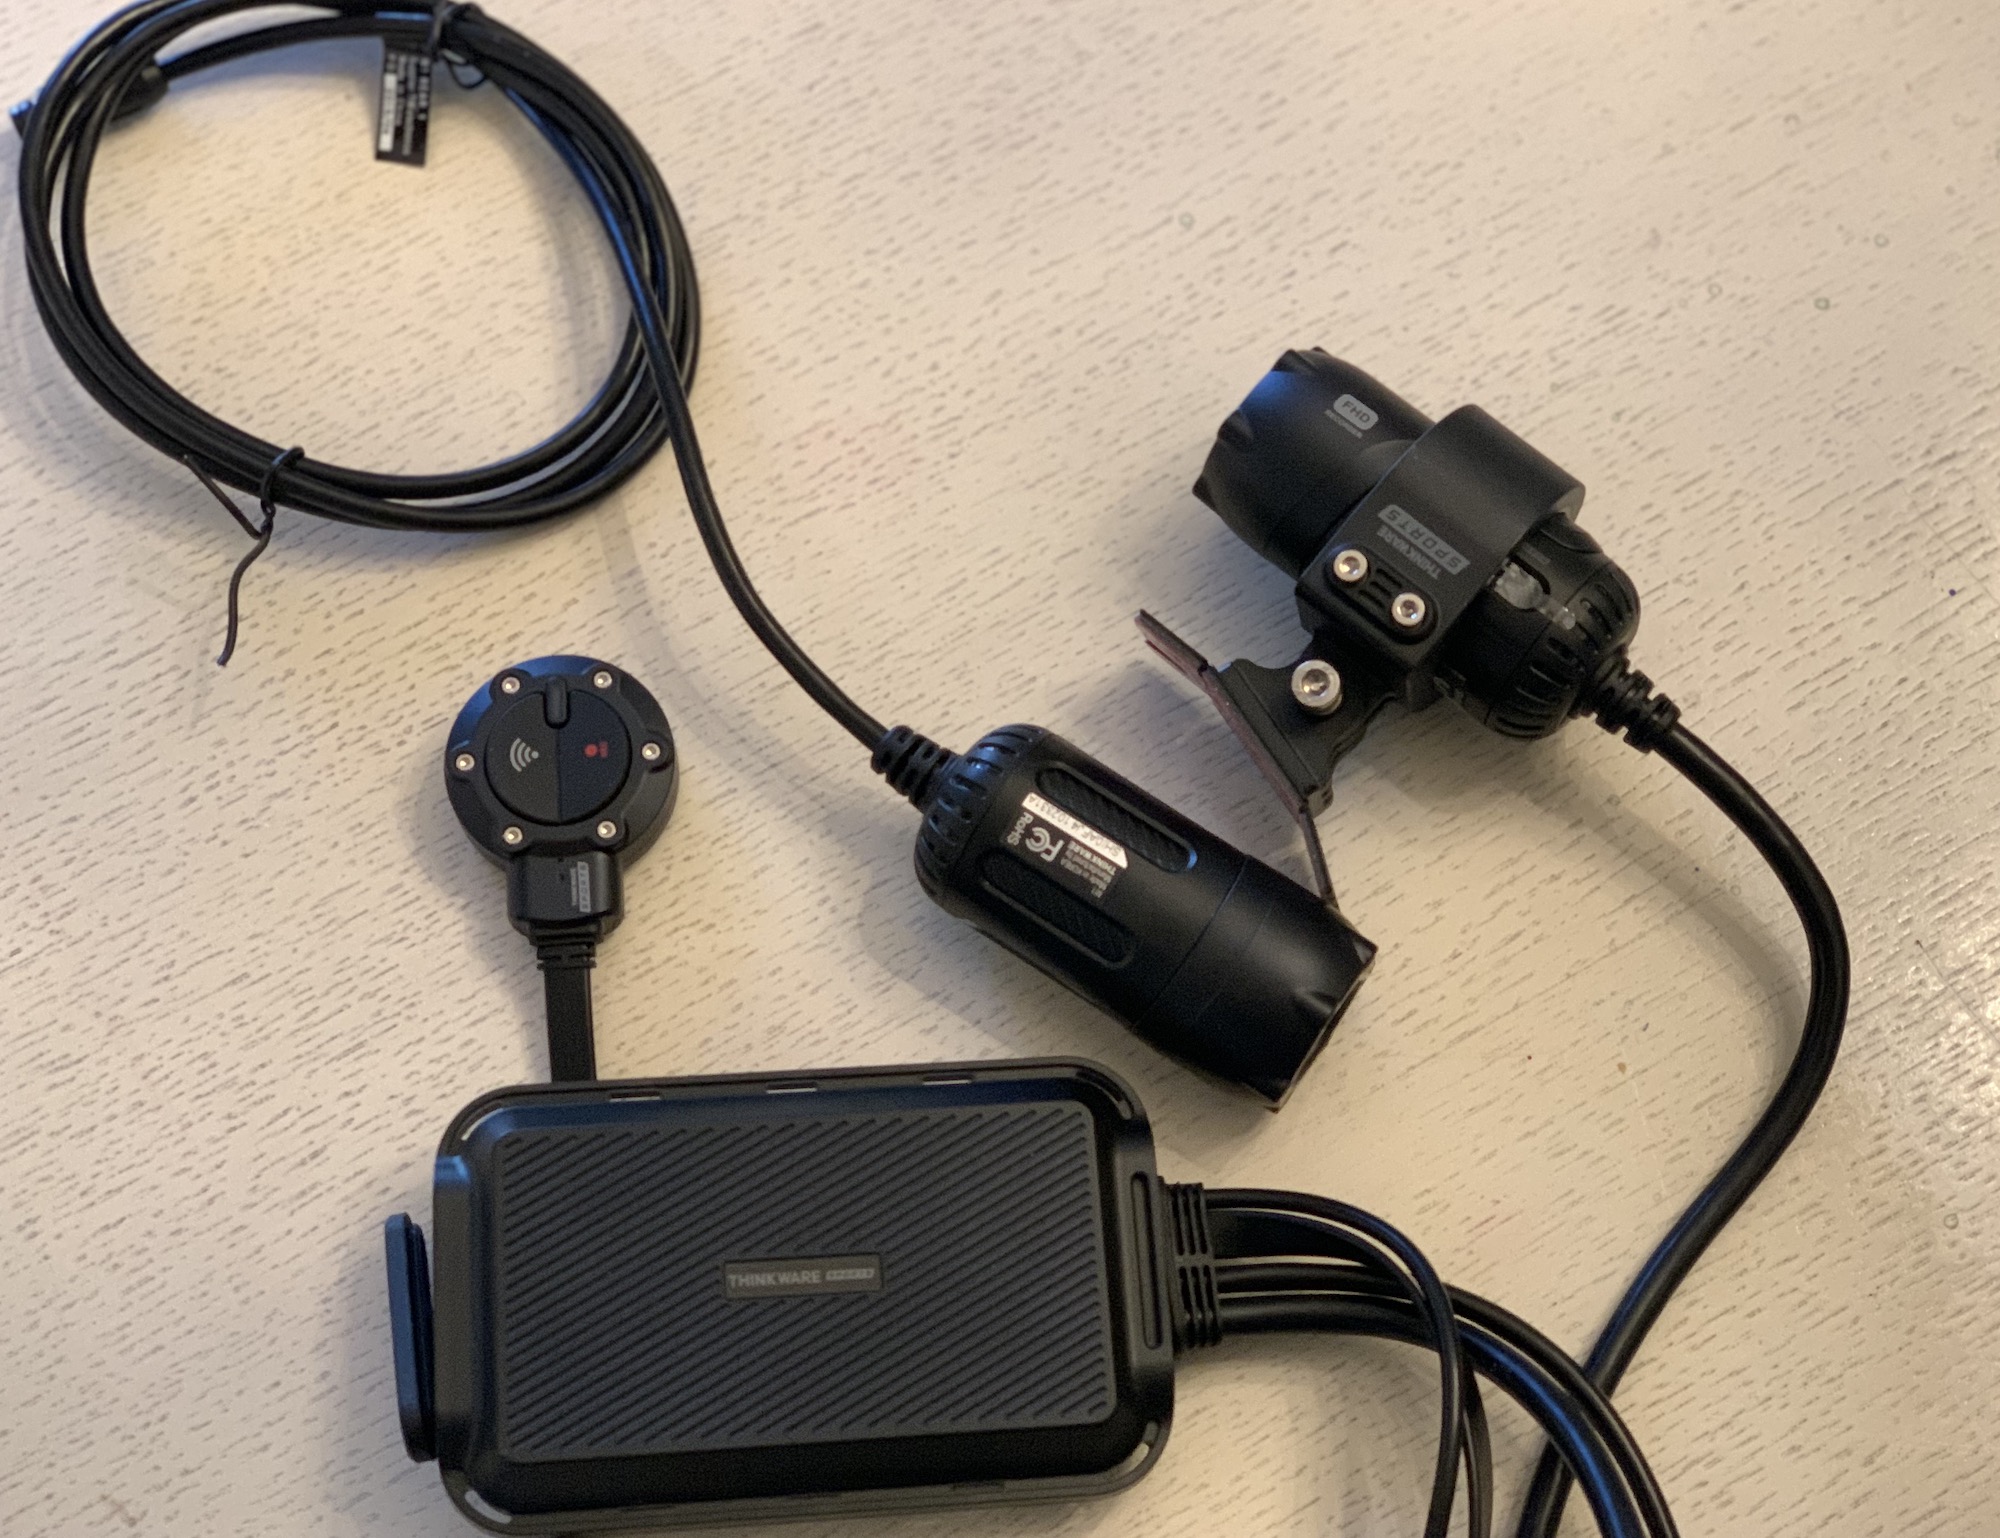 Thinkware M1 dashcam review